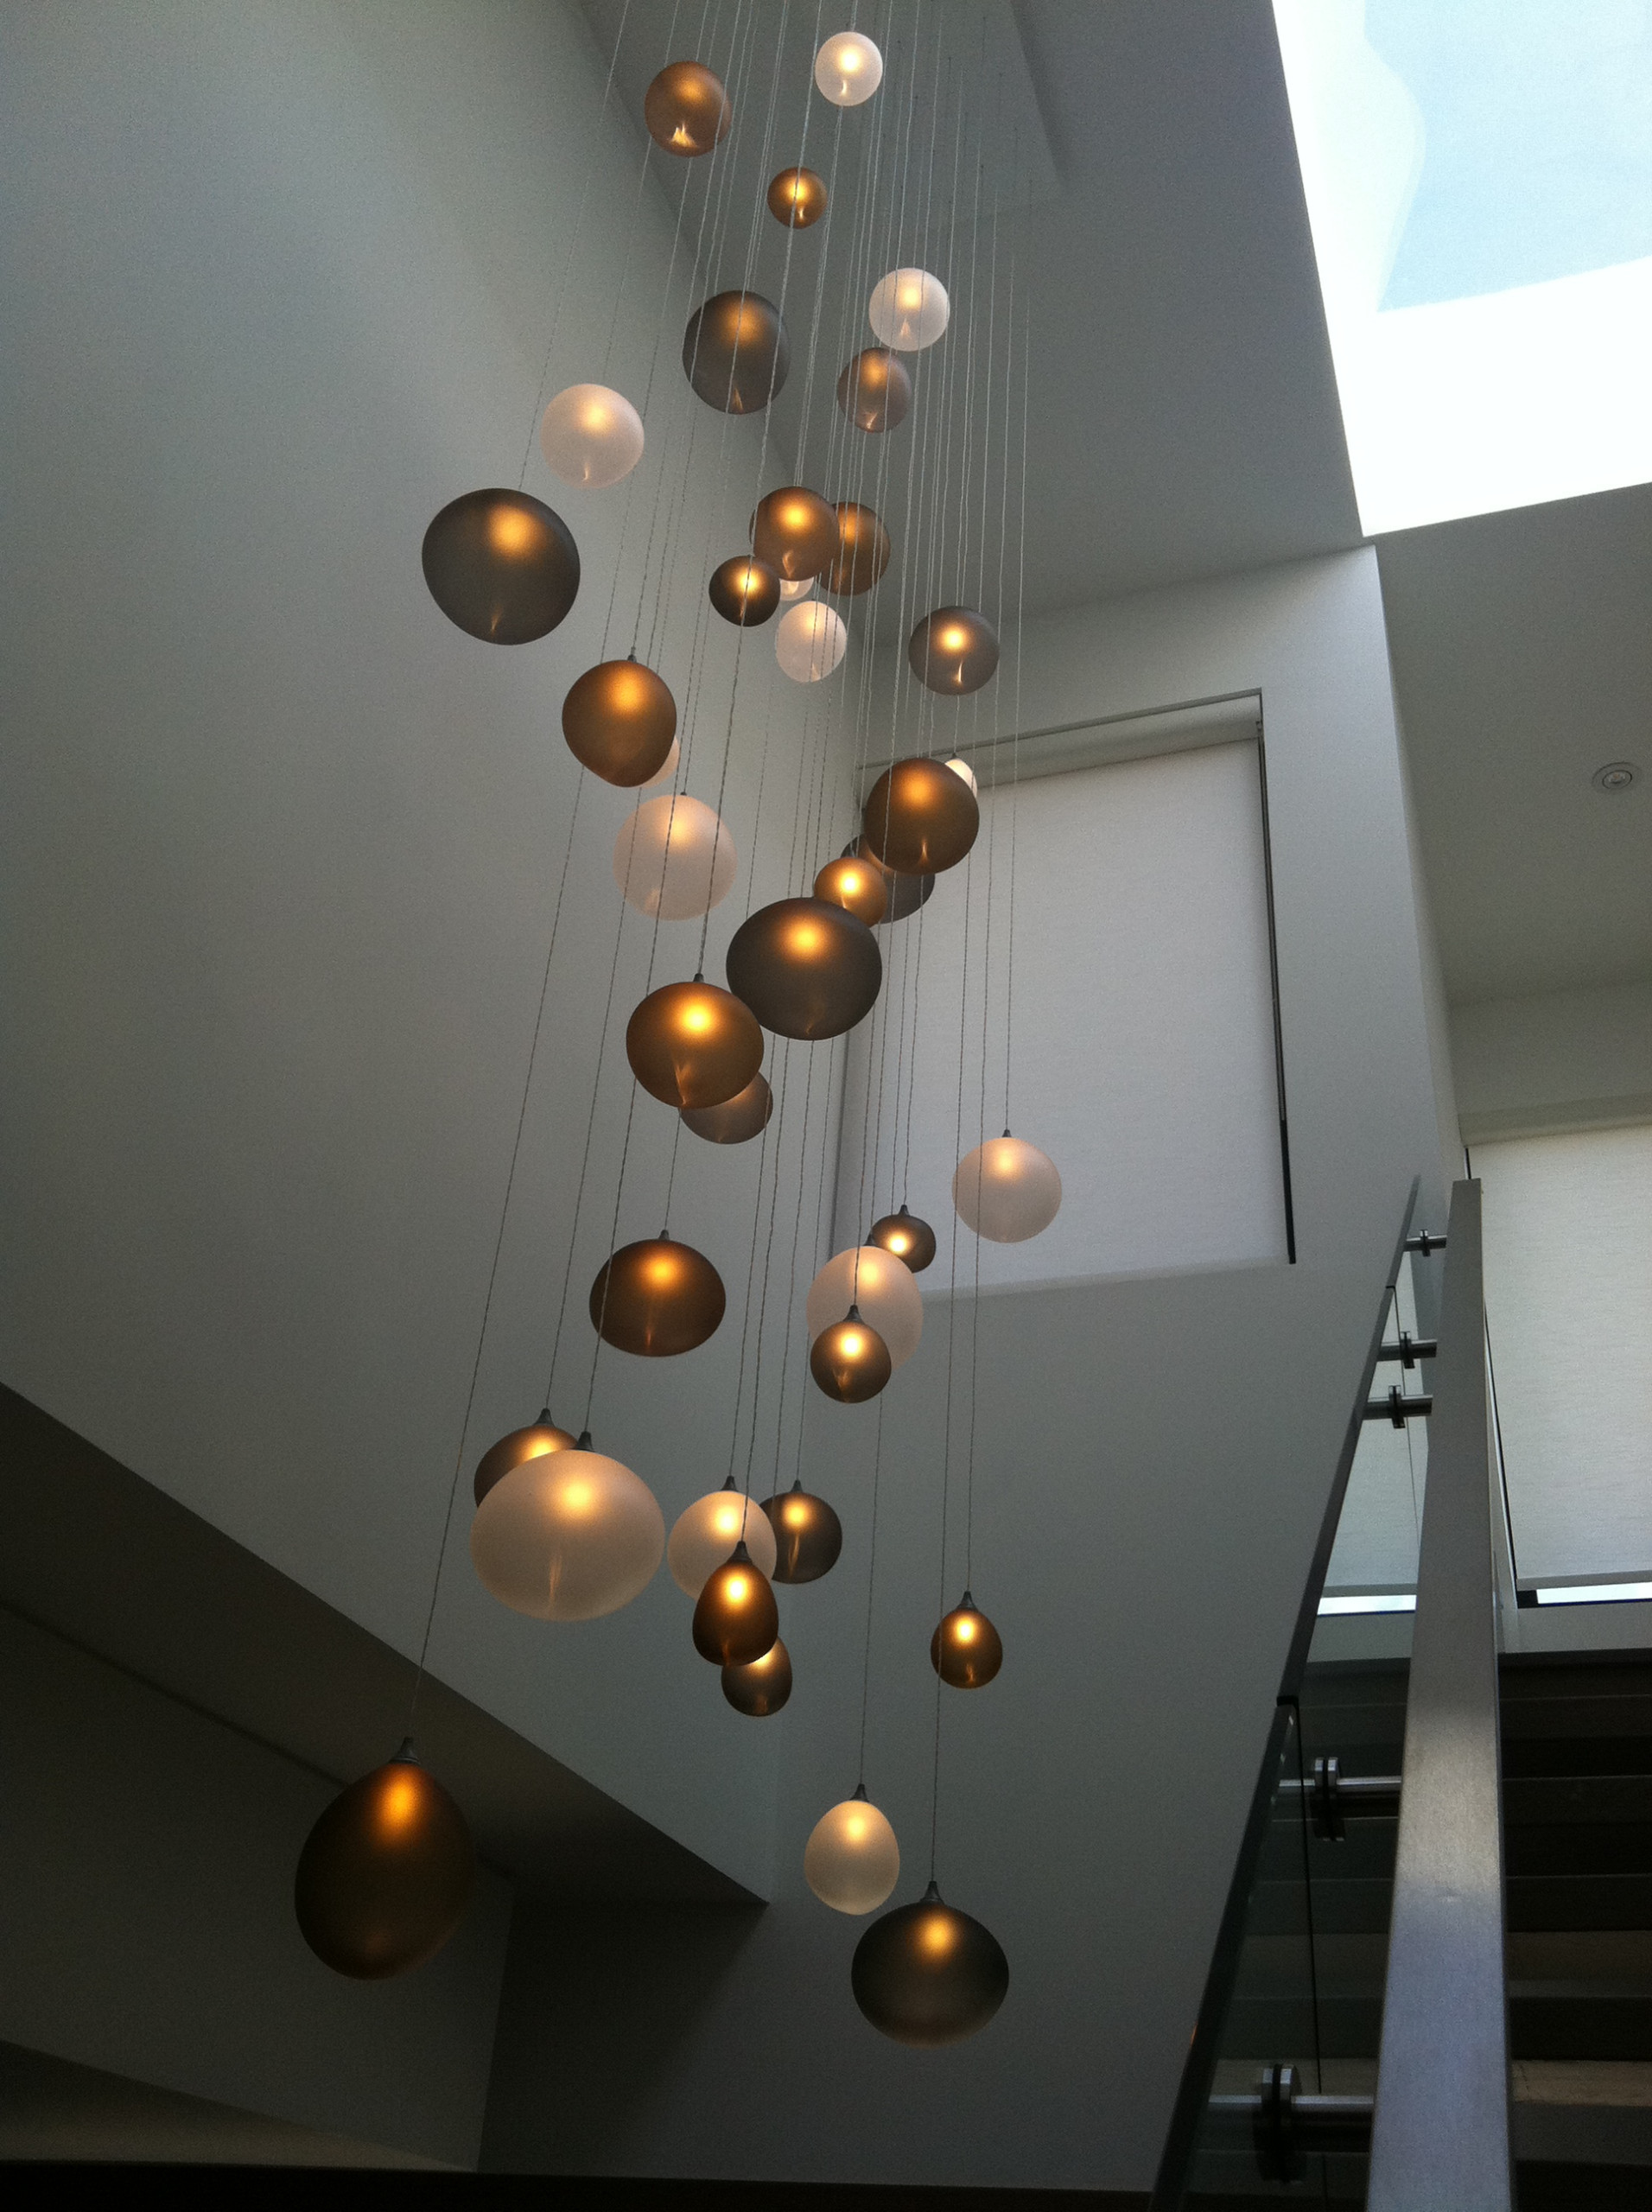 designer ceiling lamps